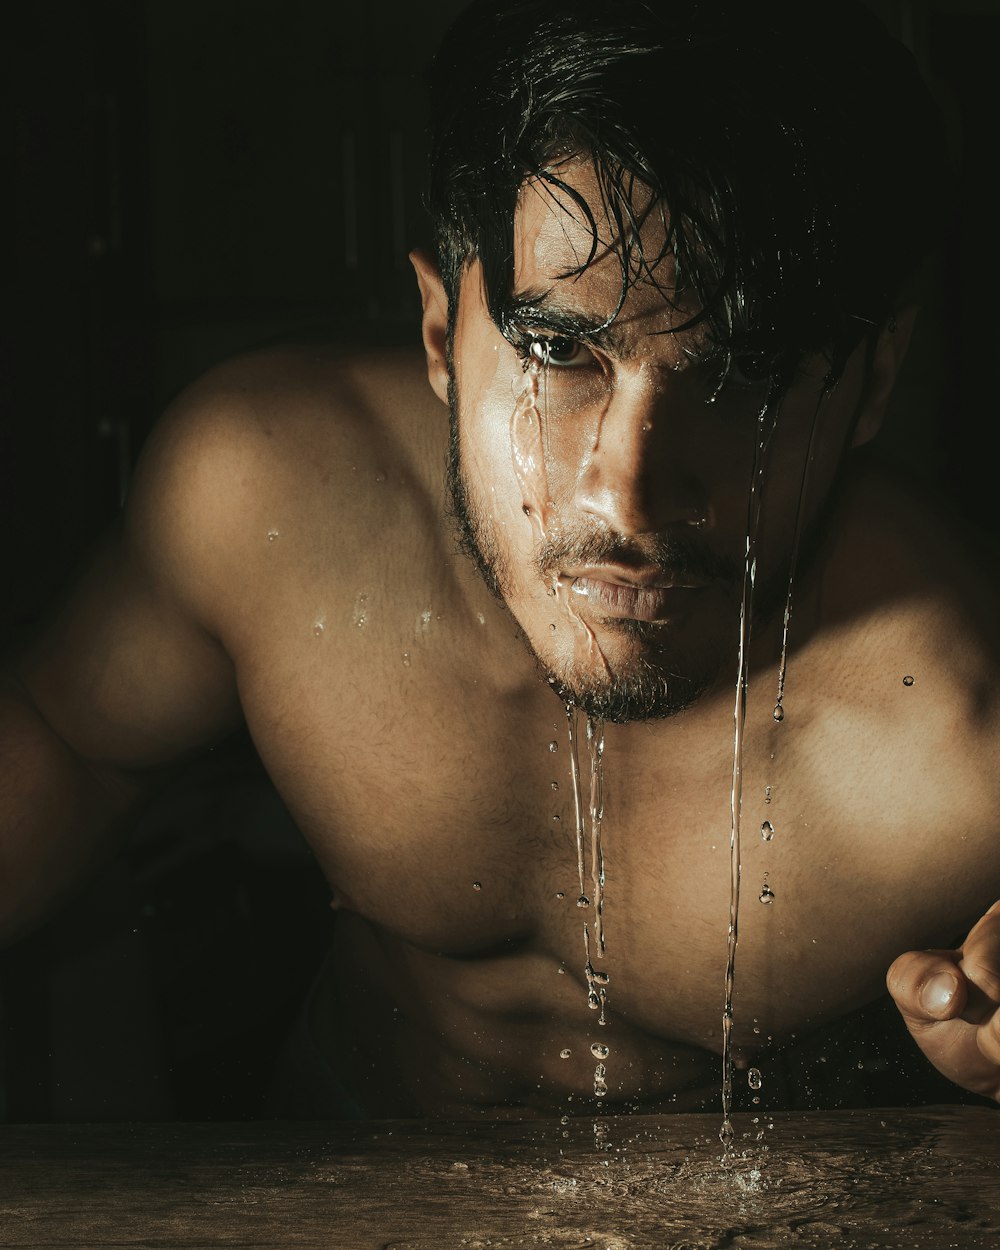 Un uomo a torso nudo sta bevendo acqua da un rubinetto